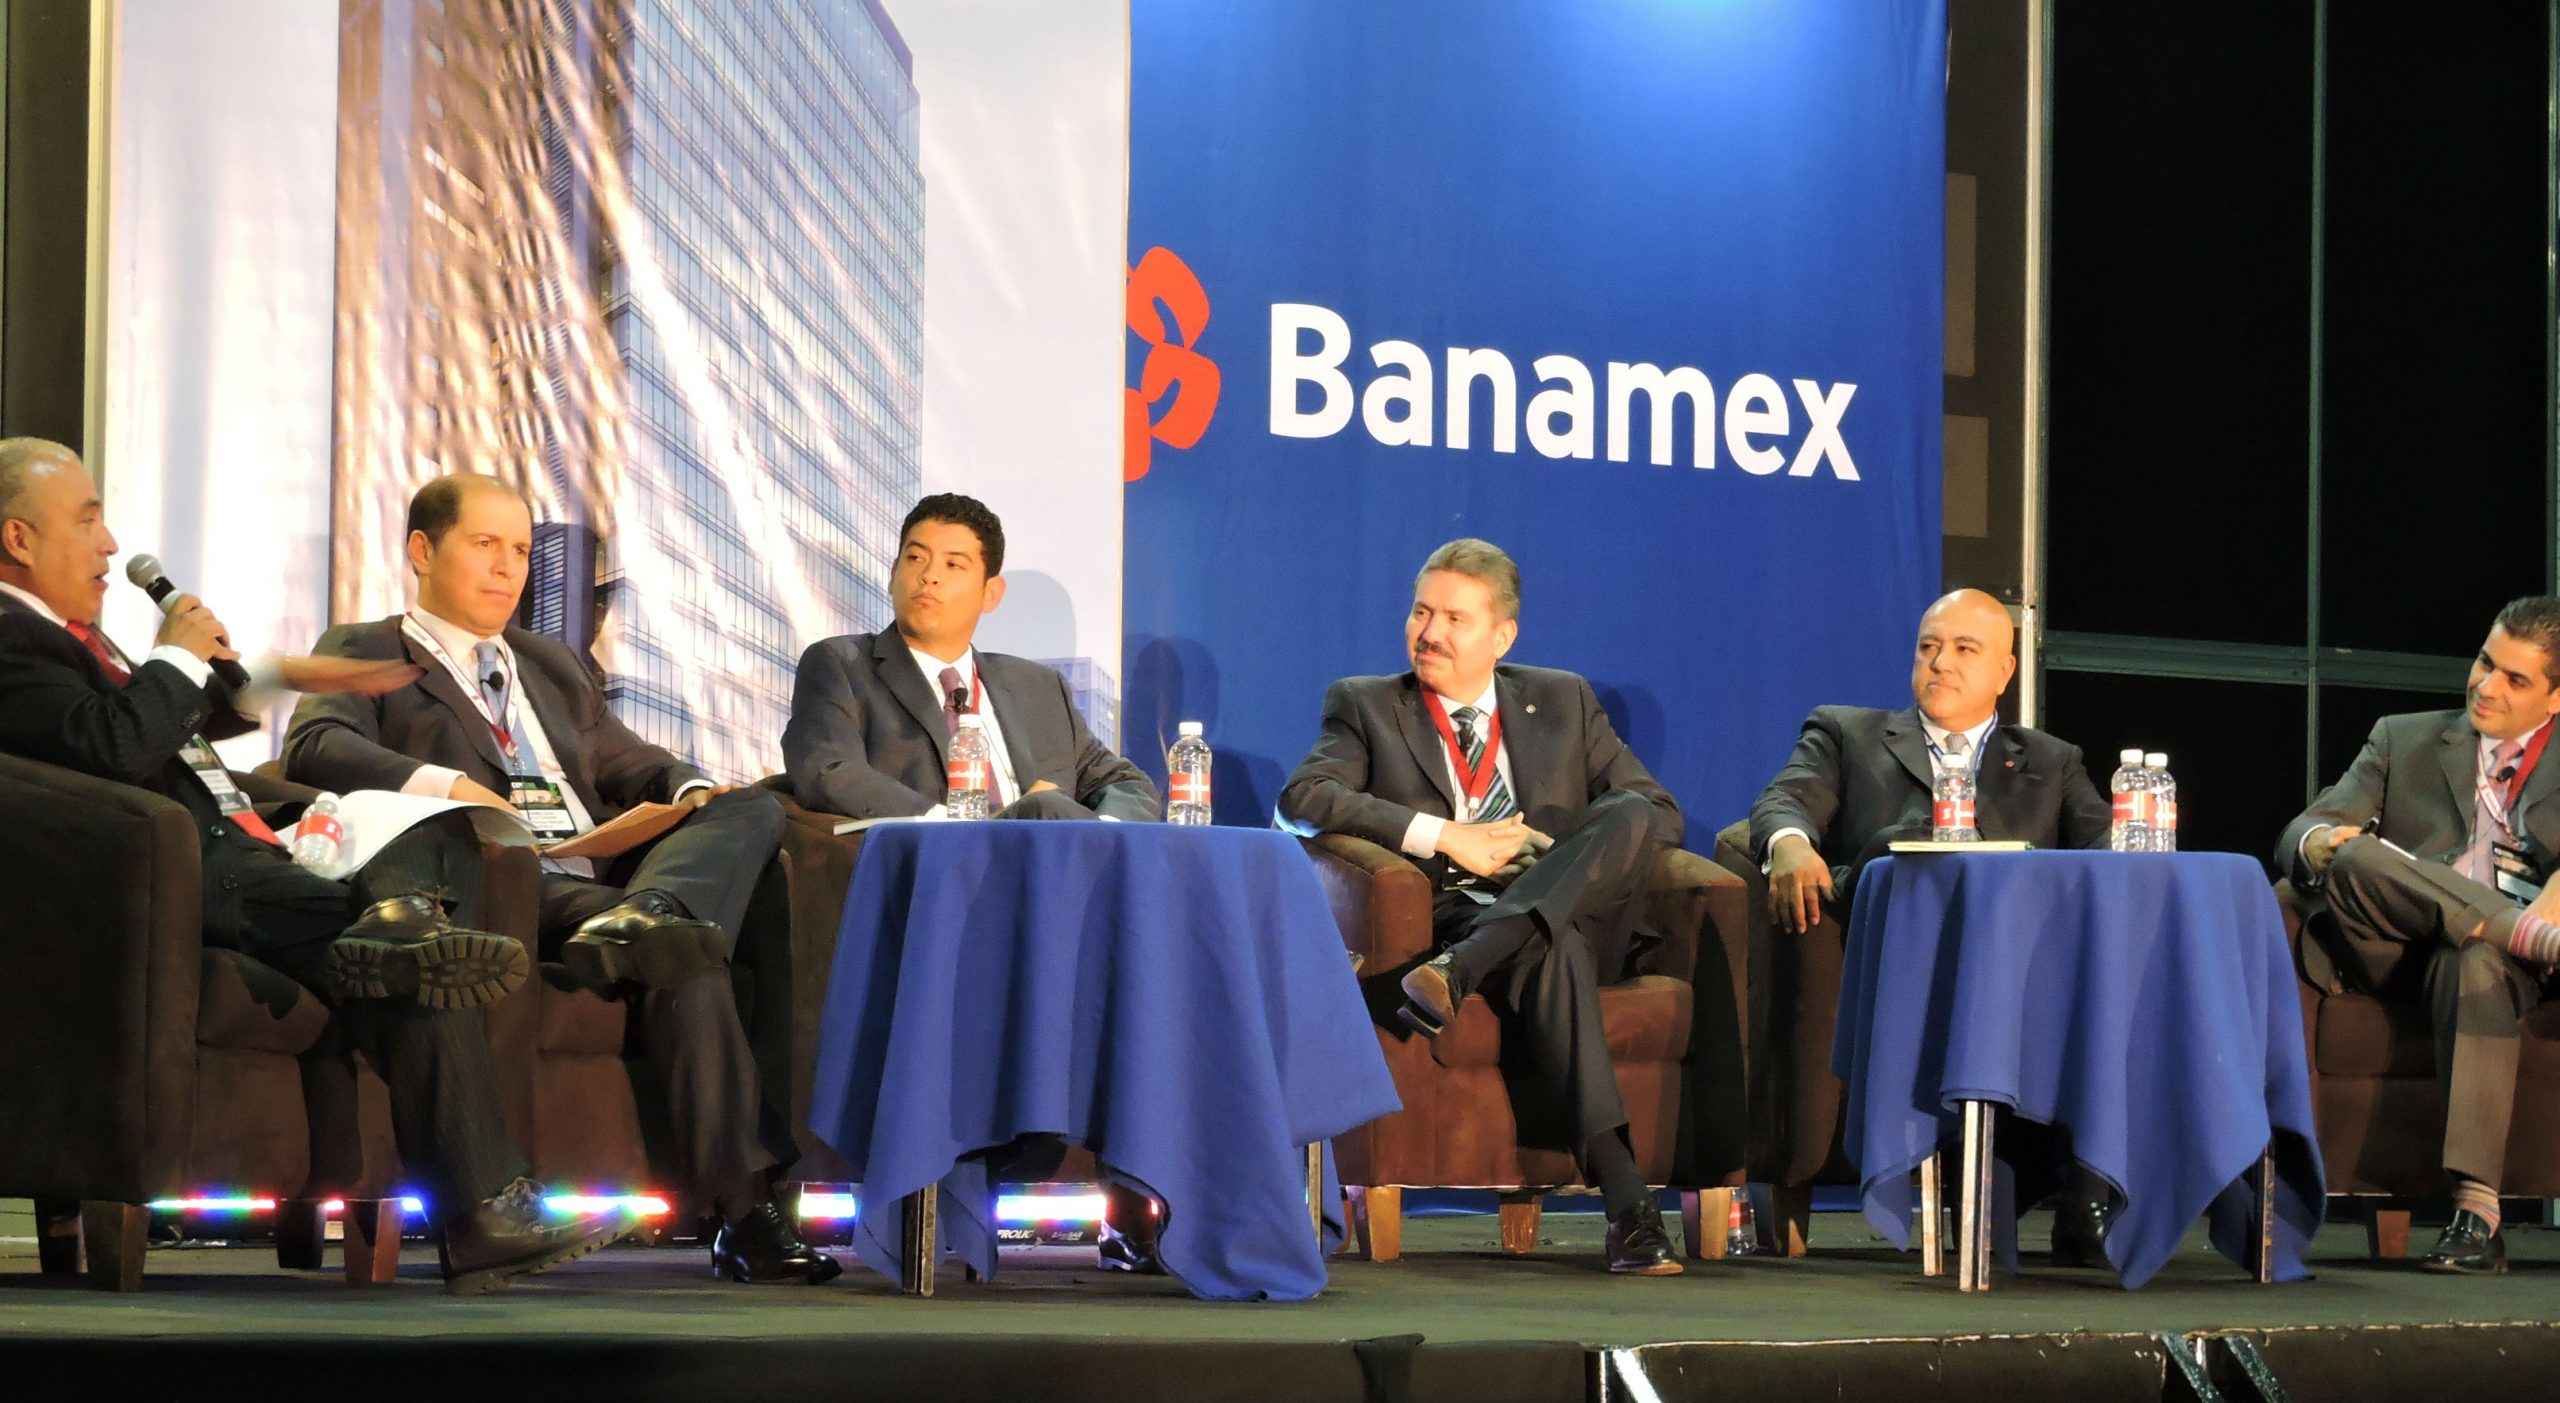 Banqueros analizan oportunidades en sector hipotecario - banqueros scaled